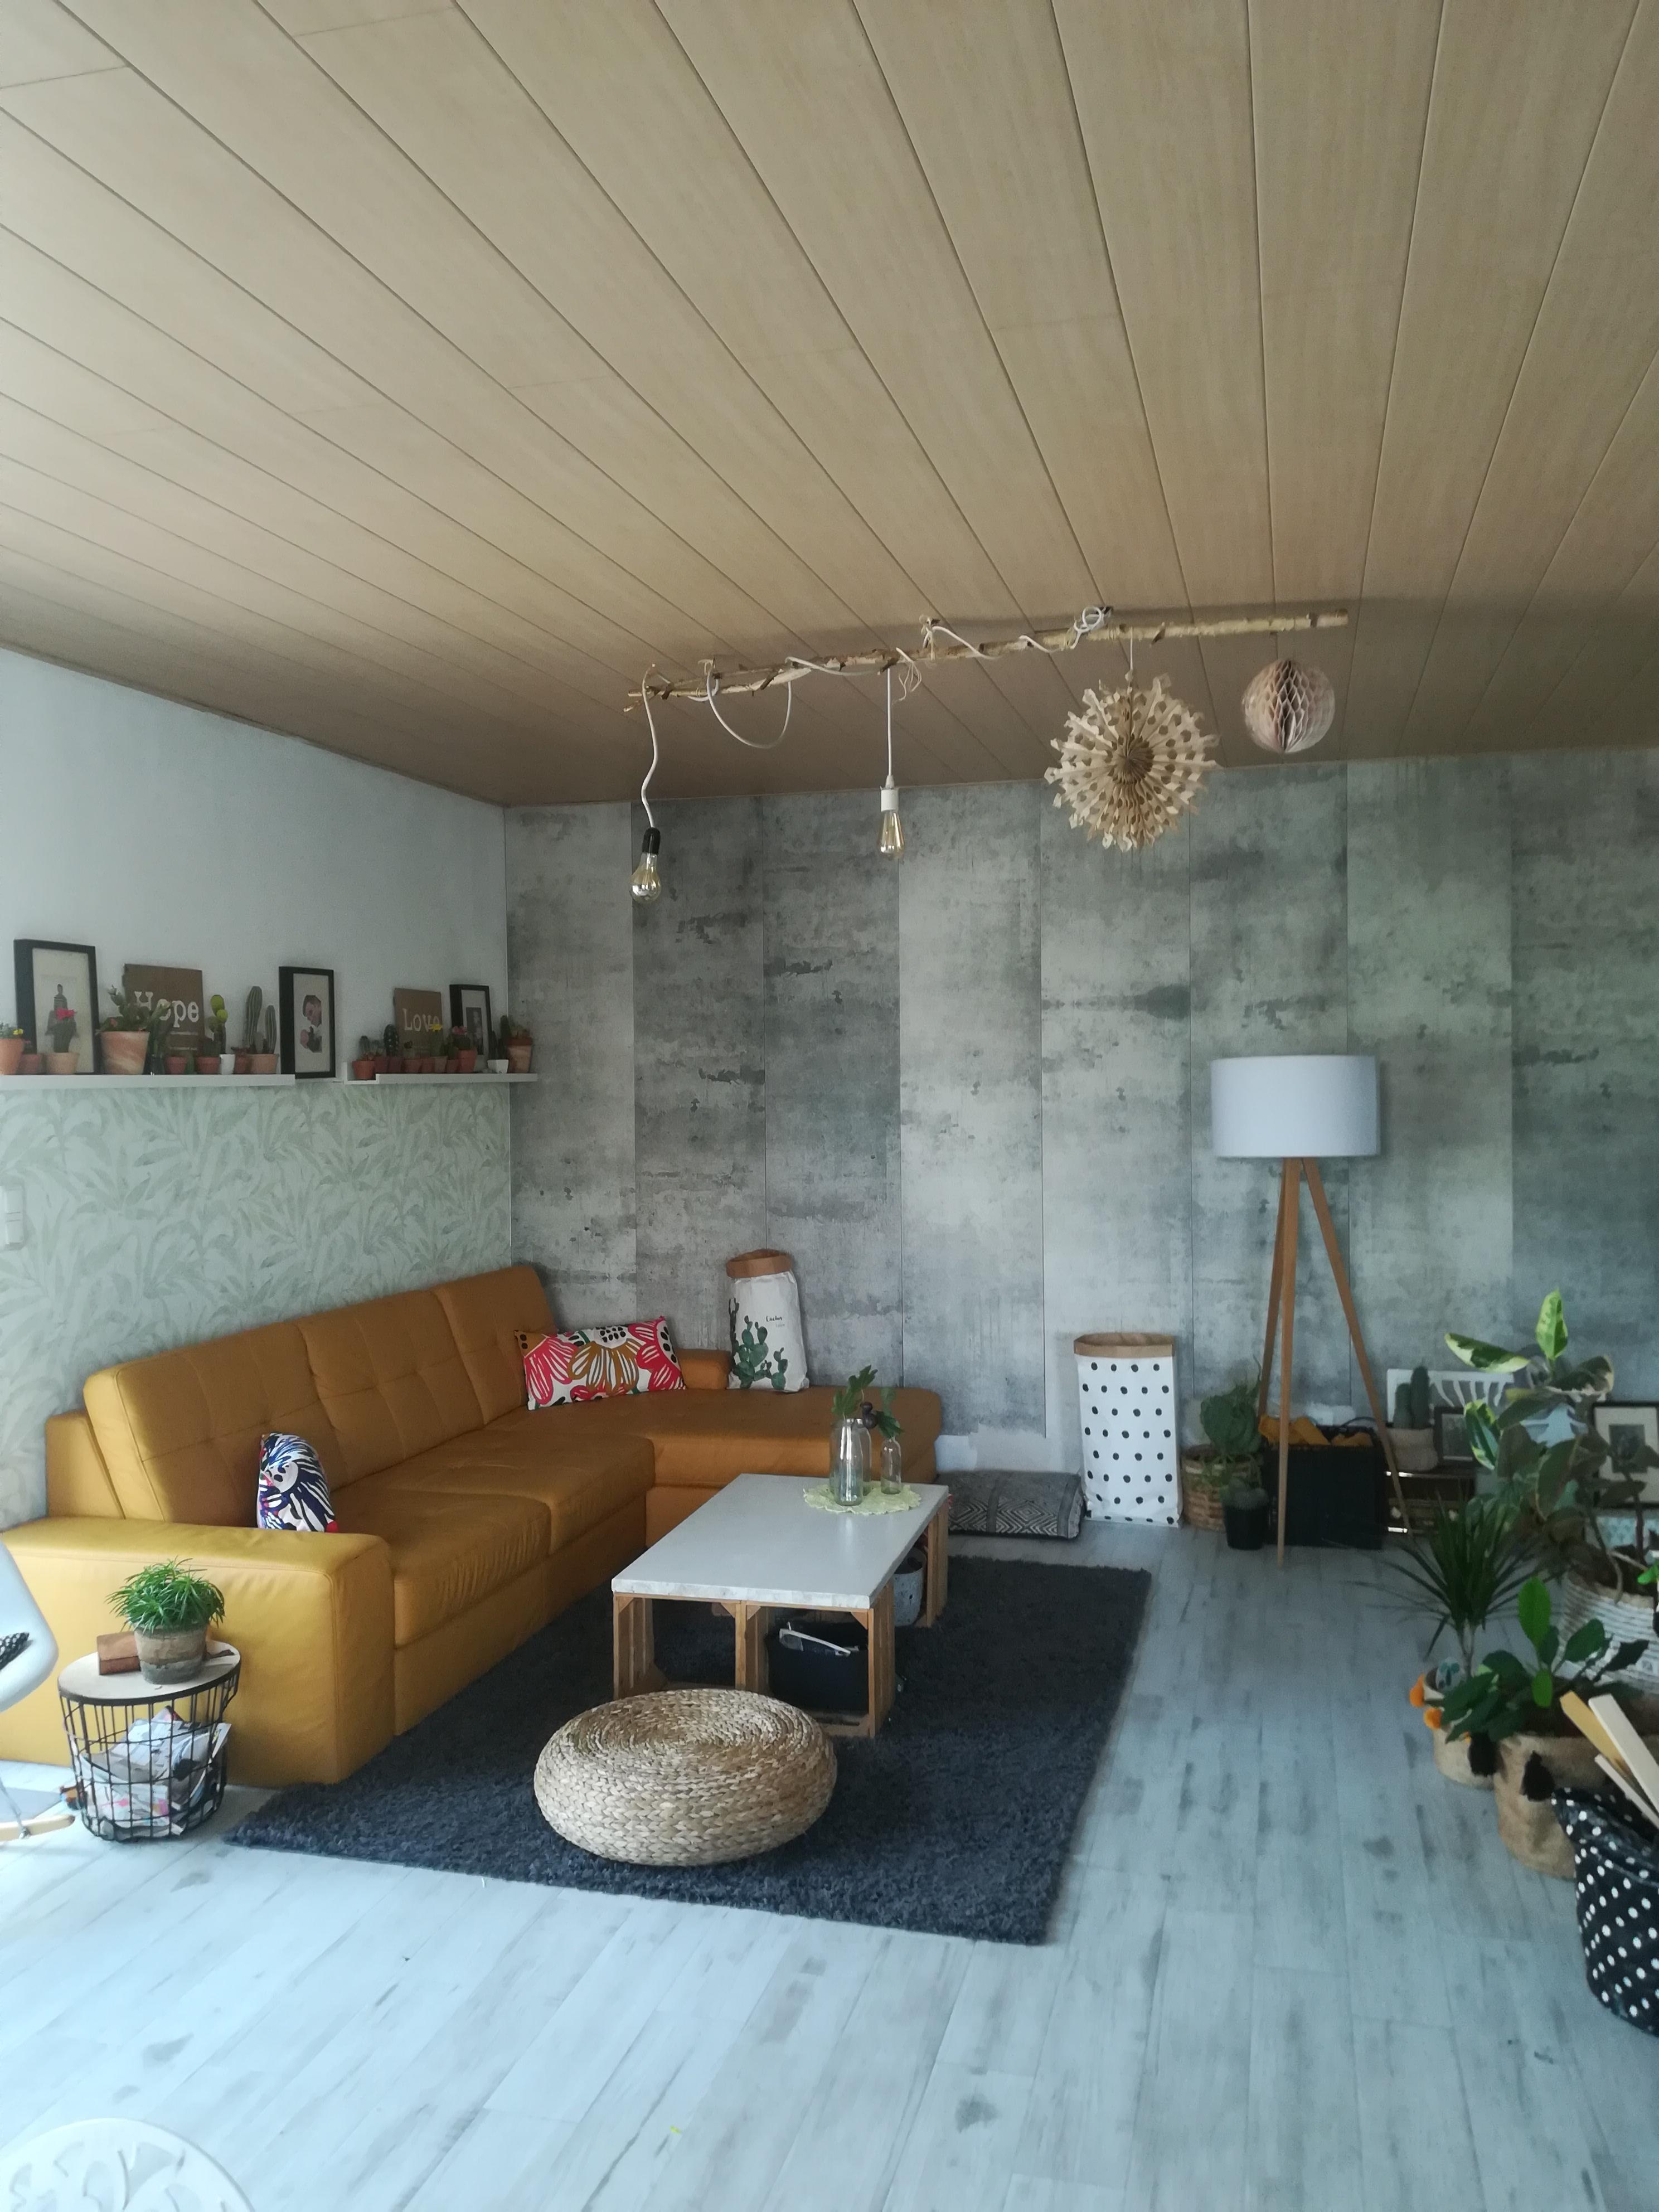 #livingchallenge #wohnzimmergestaltung
Ich habe mich getraut #senfgelbe Ledercouch :-D